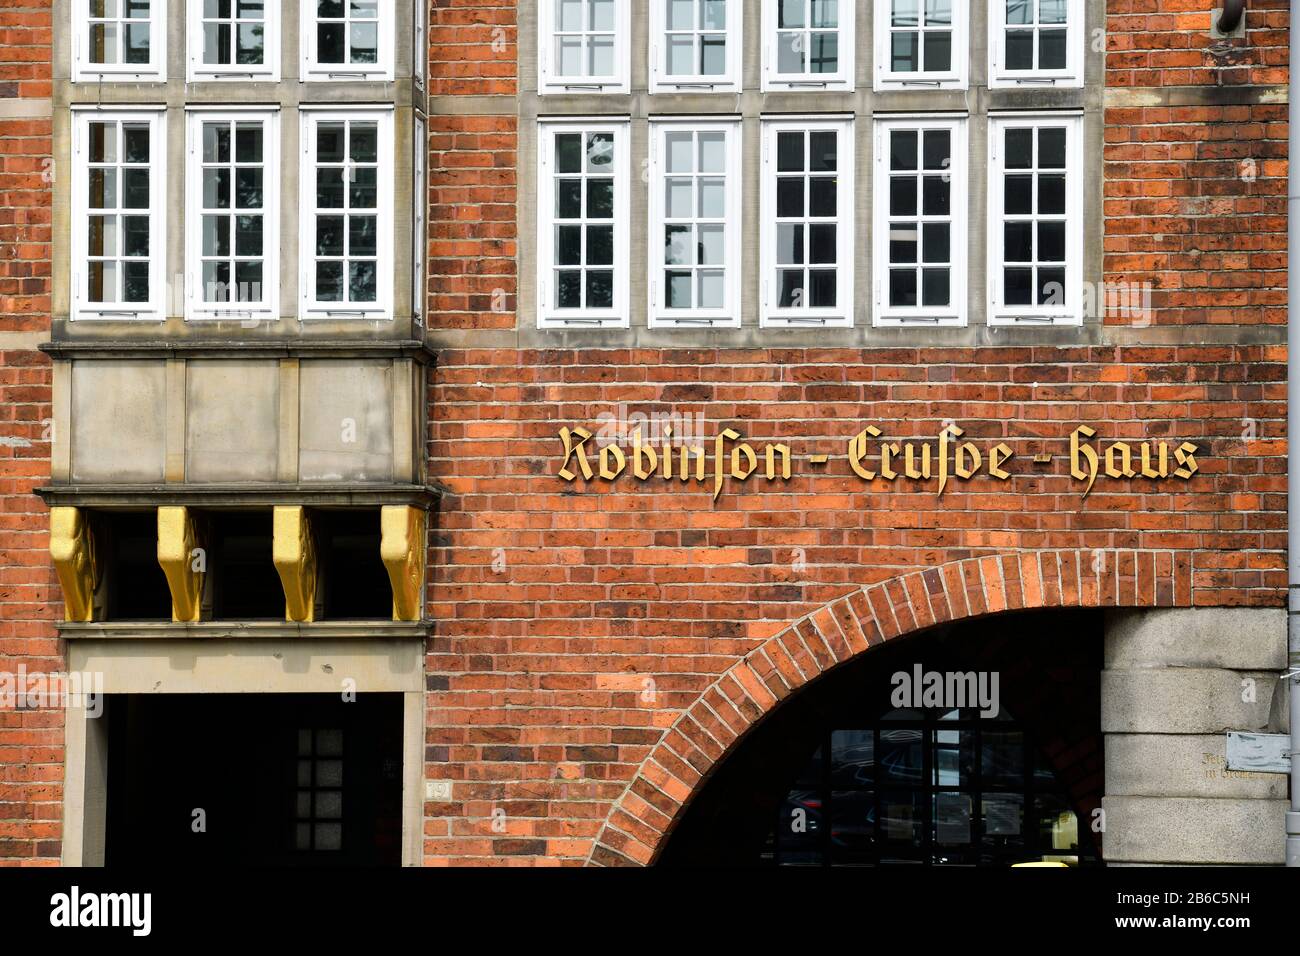 Robinson Crusoe Haus, Böttcherstraße, Altstadt, Bremen, Deutschland Stock Photo